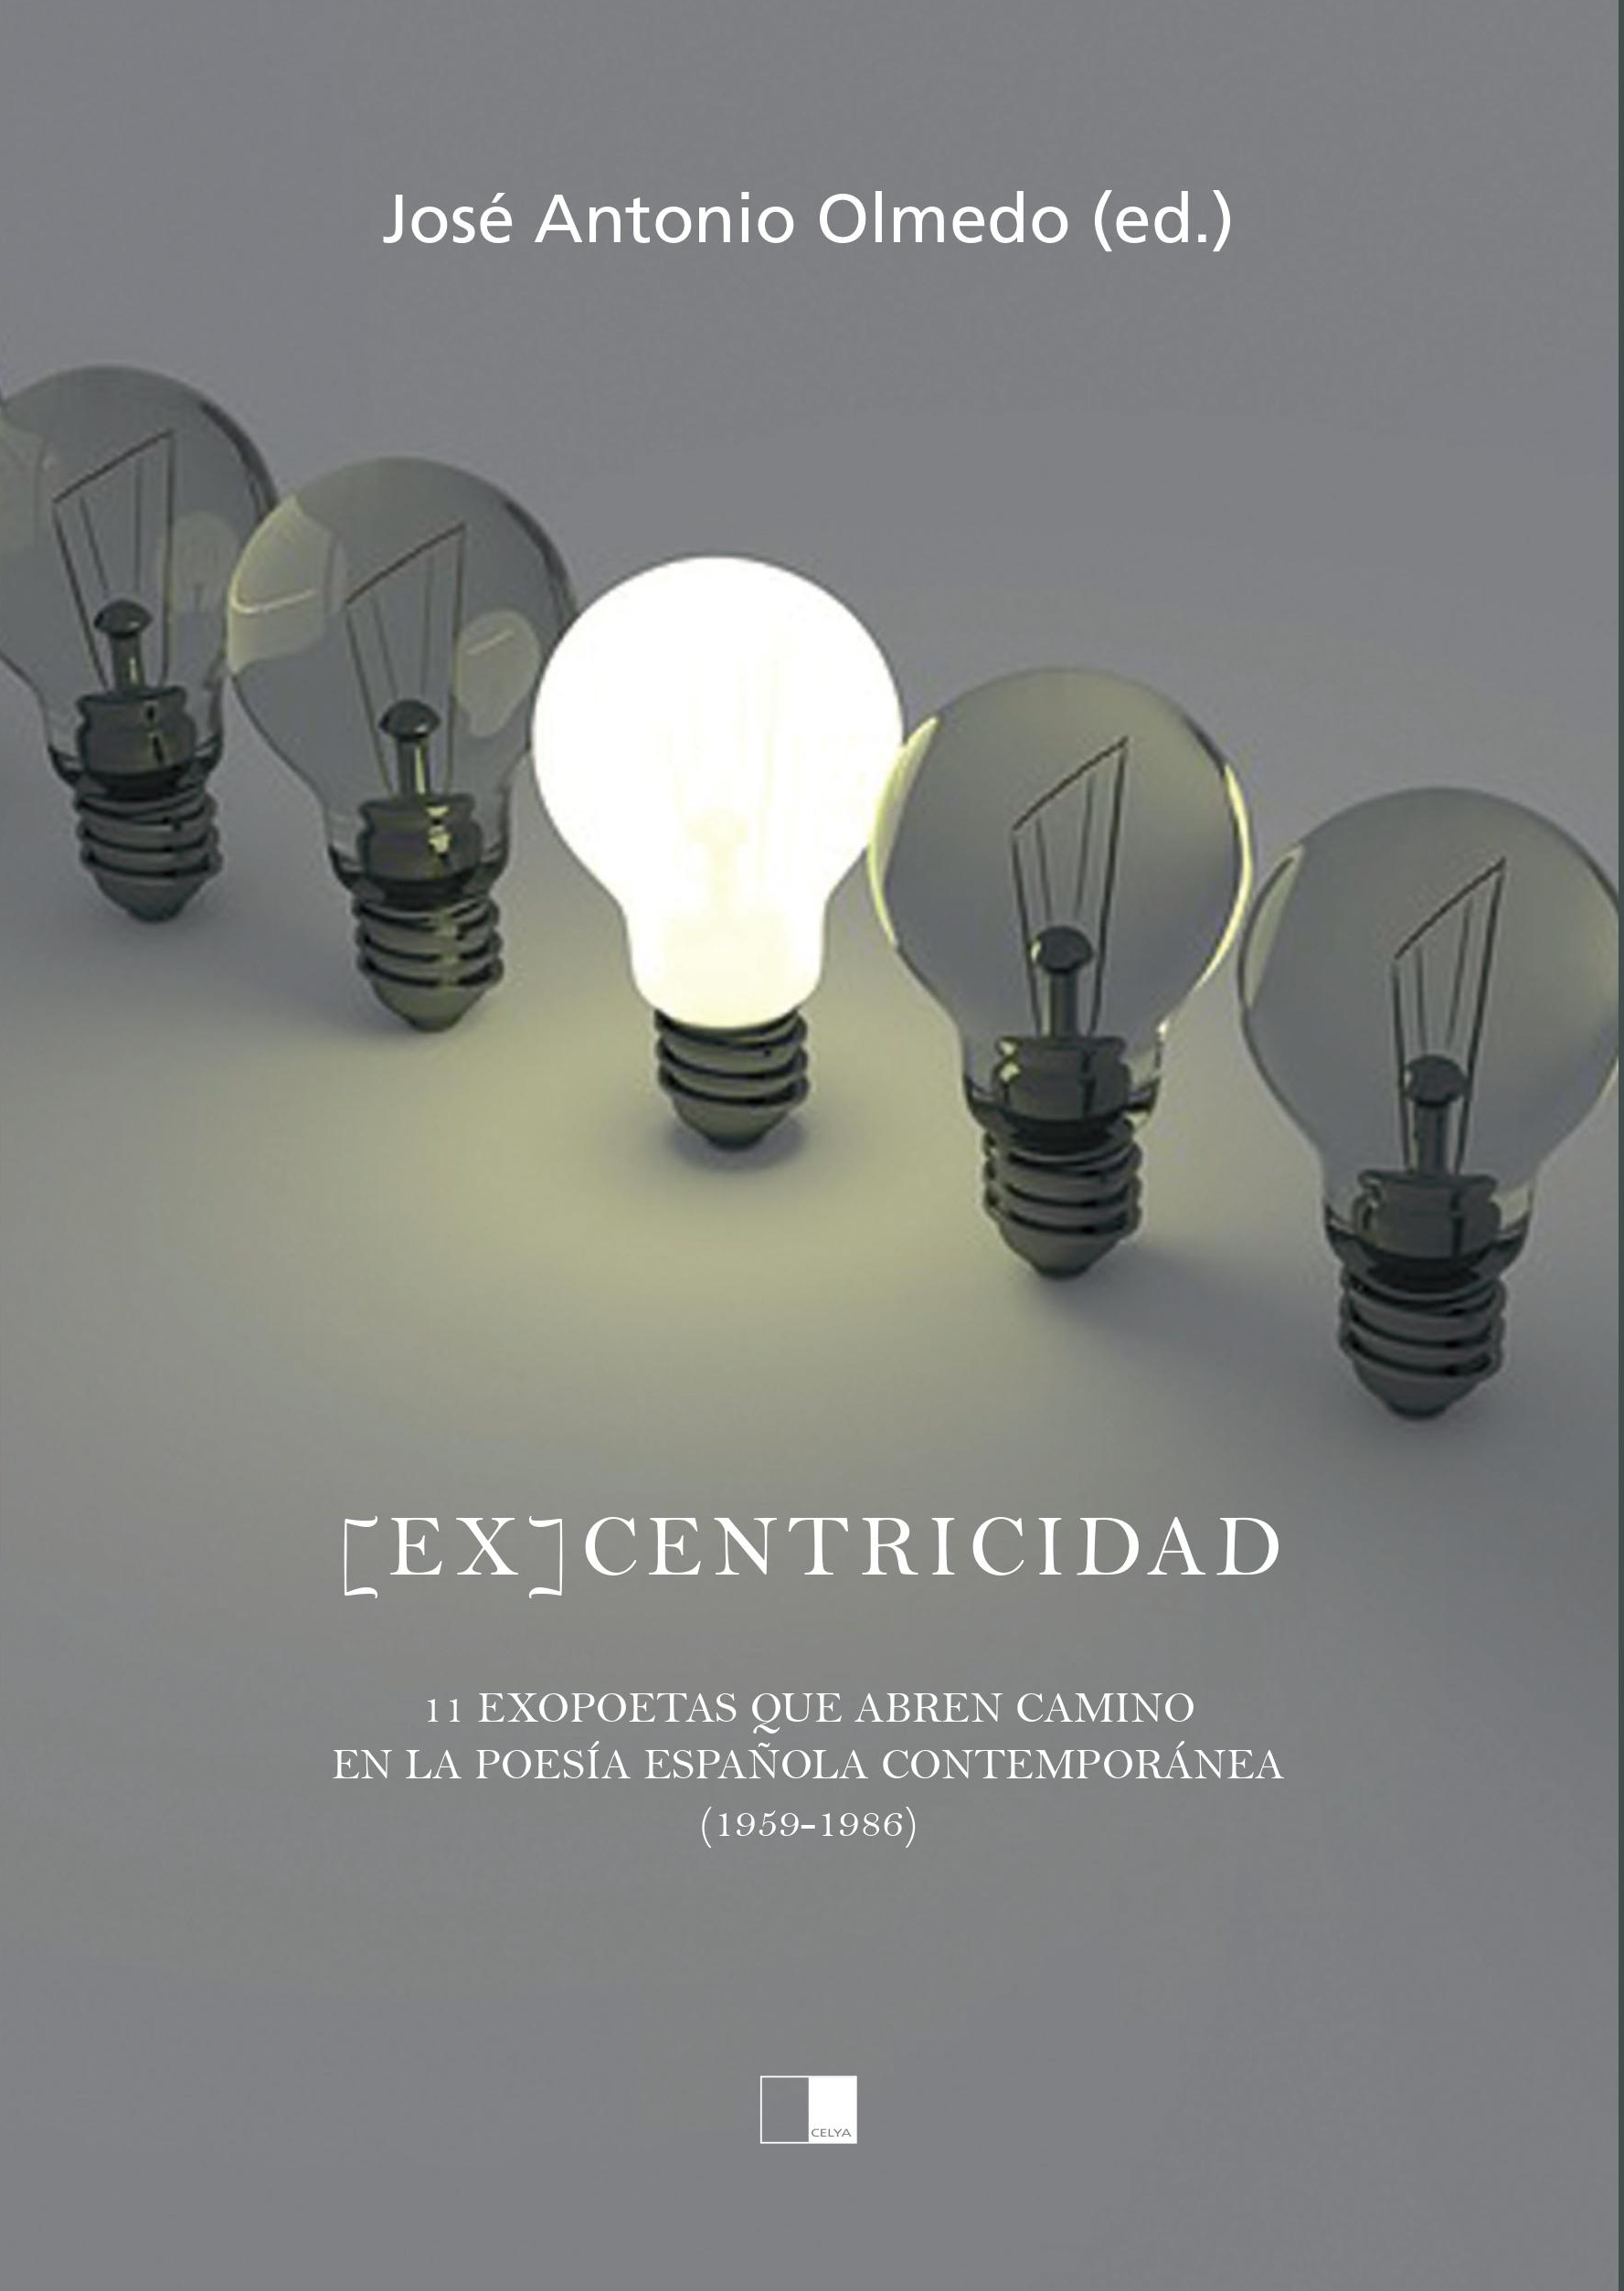 [EX]CENTRICIDAD. 11 POETAS QUE ABREN CAMINO EN LA POESÍA ESPAÑOLA CONTEMPORÁNEA (1959-1986)